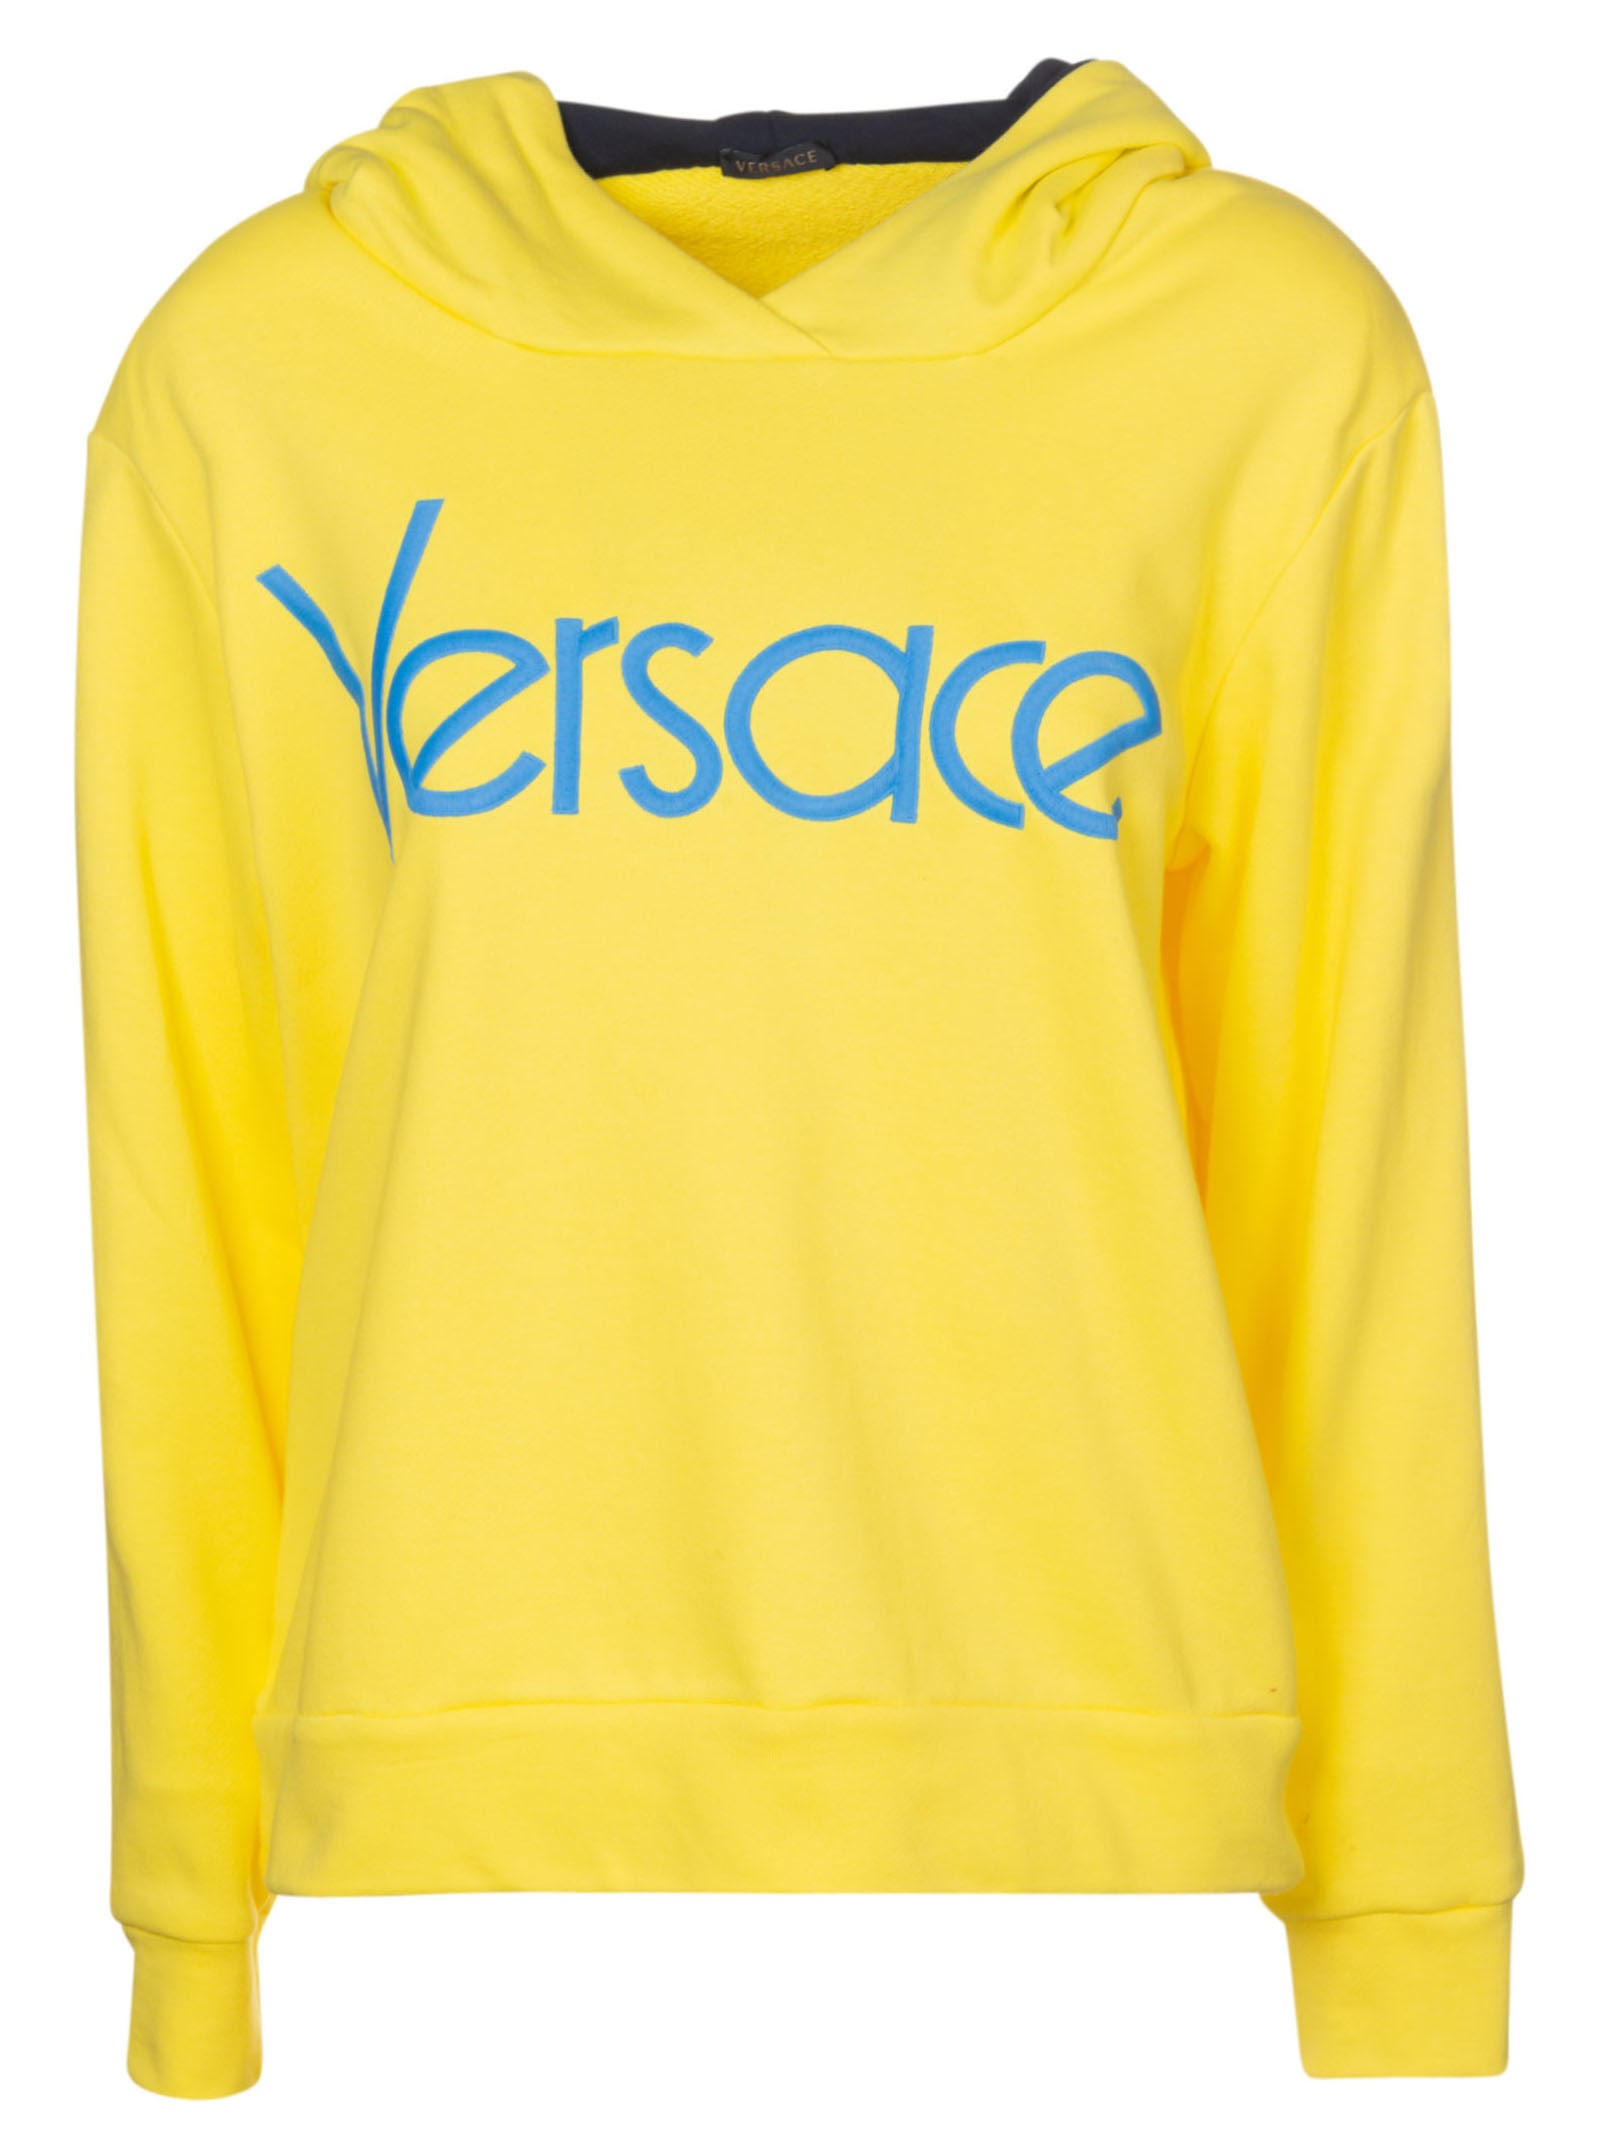 versace yellow hoodie